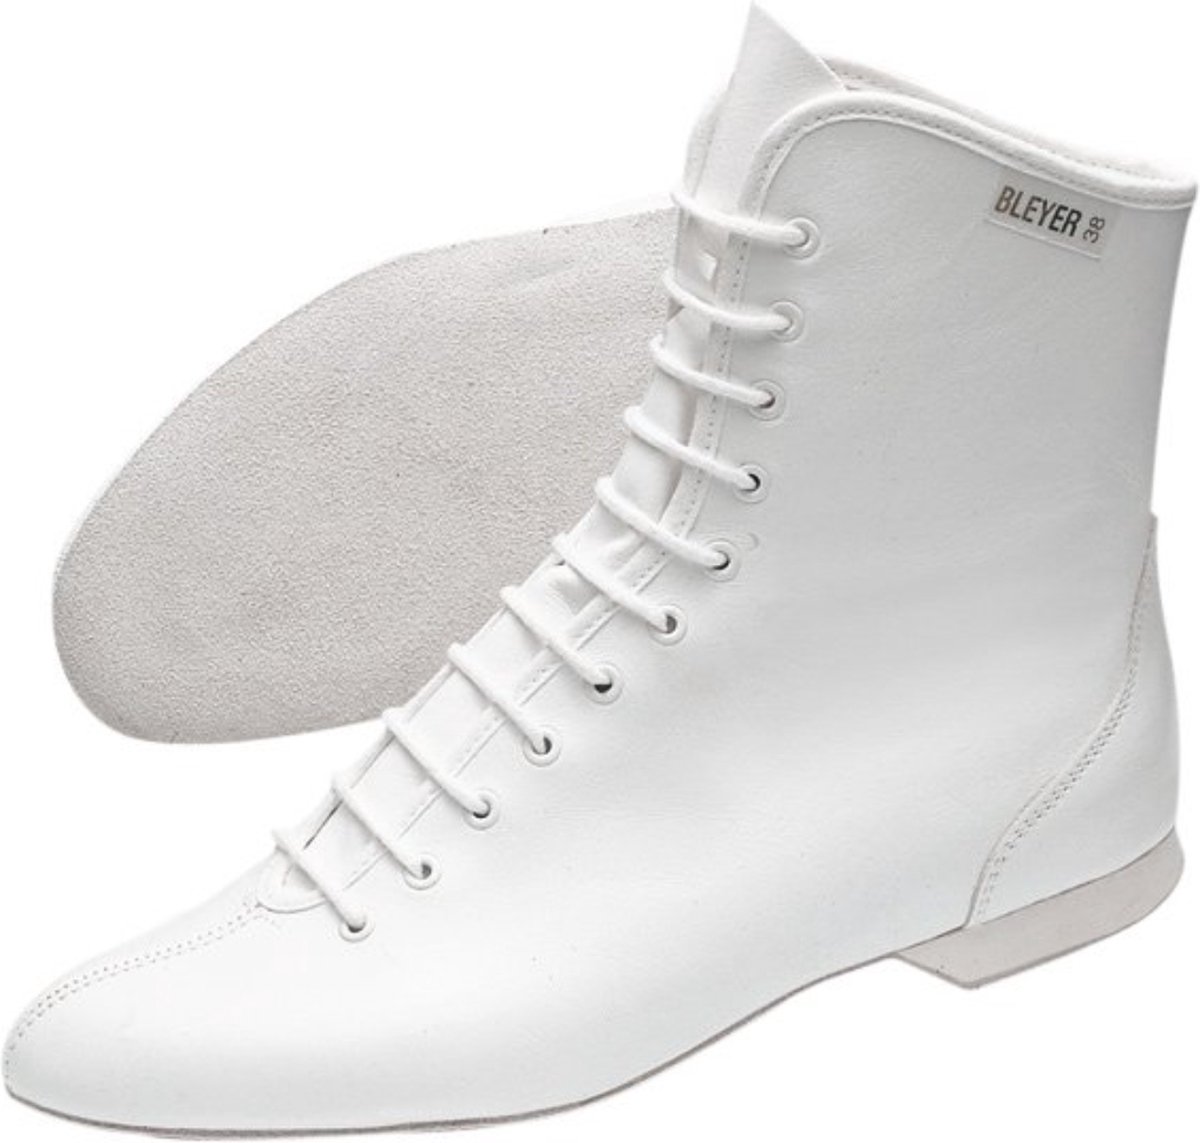 Bleyer - Garba boots - dansschoen - wit - maat 38